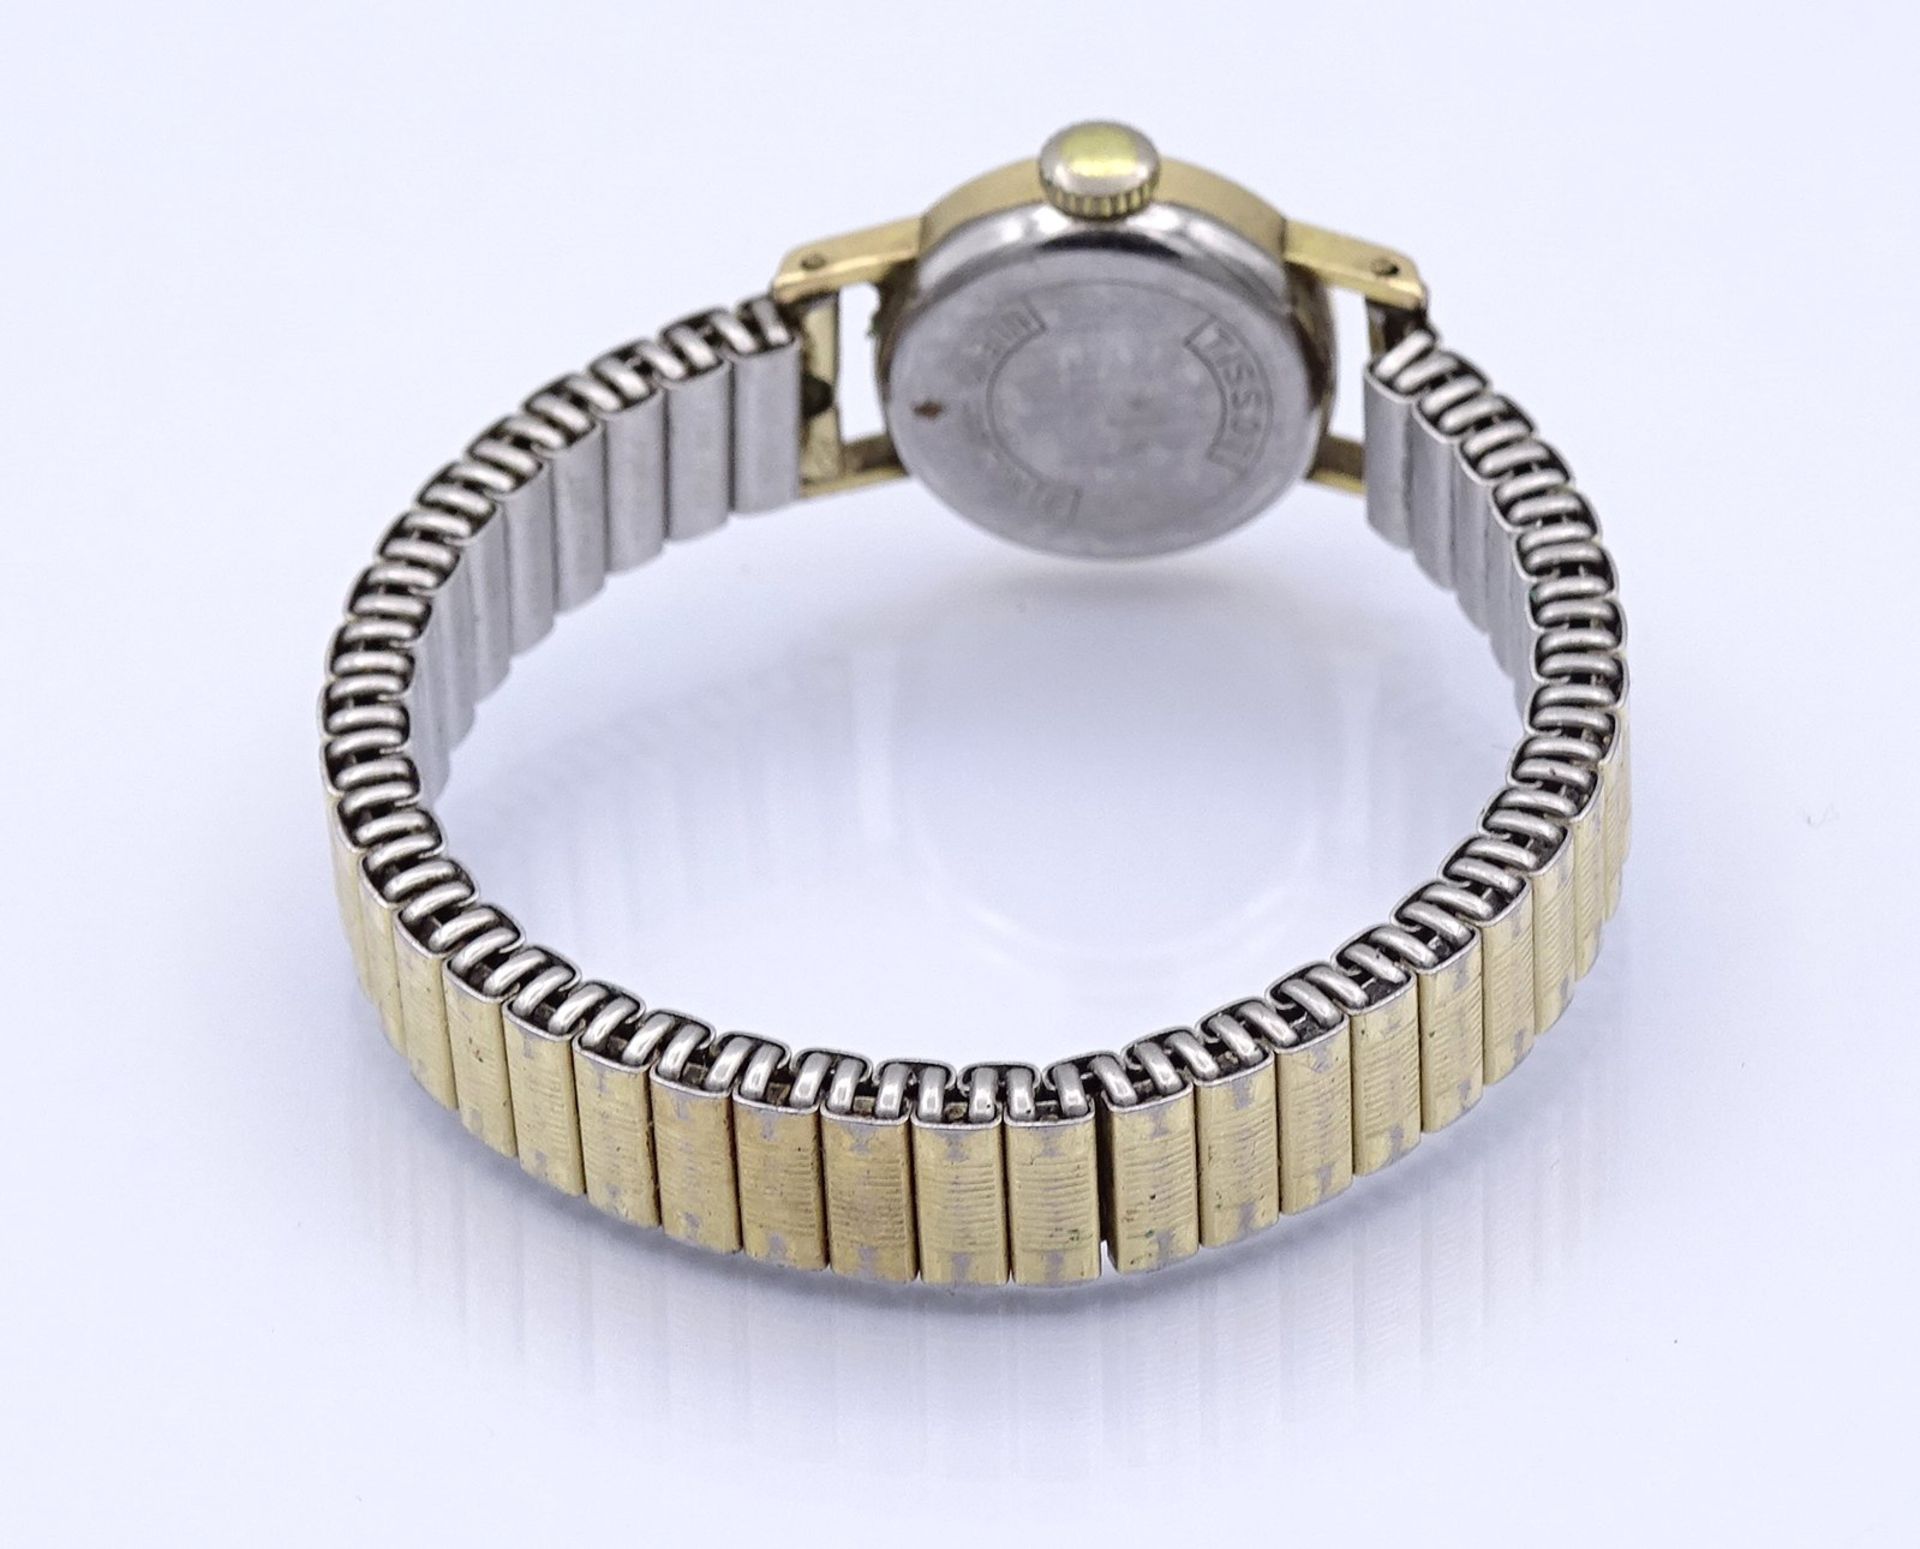 Damen Armbanduhr "Tissot", mechanisch, Werk steht, D. 16mm - Image 3 of 3